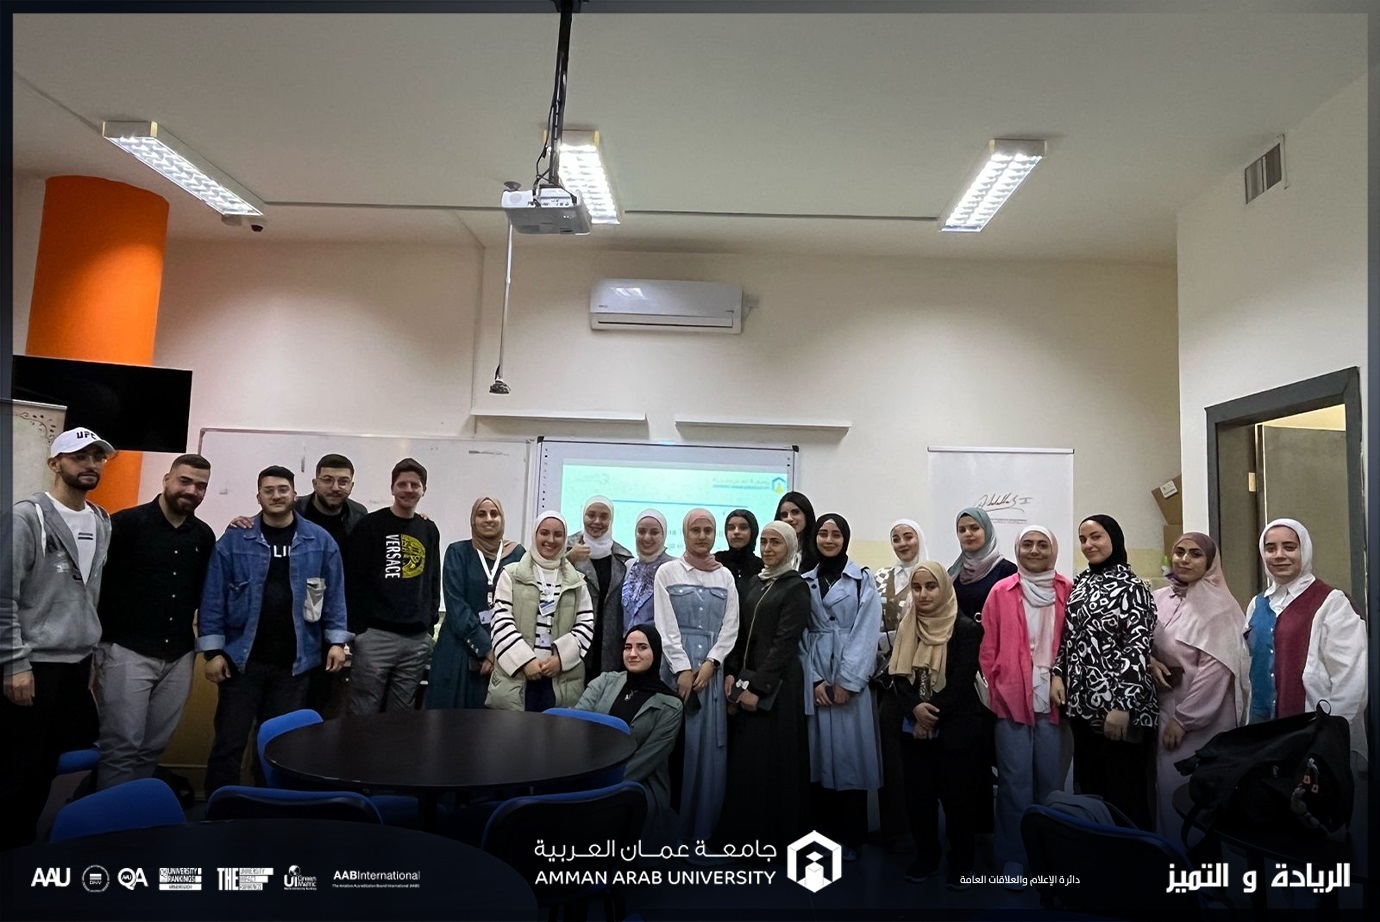 ورشة علمية لطلبة صيدلة عمان العربية بعنوان "الهندسة الوراثية"